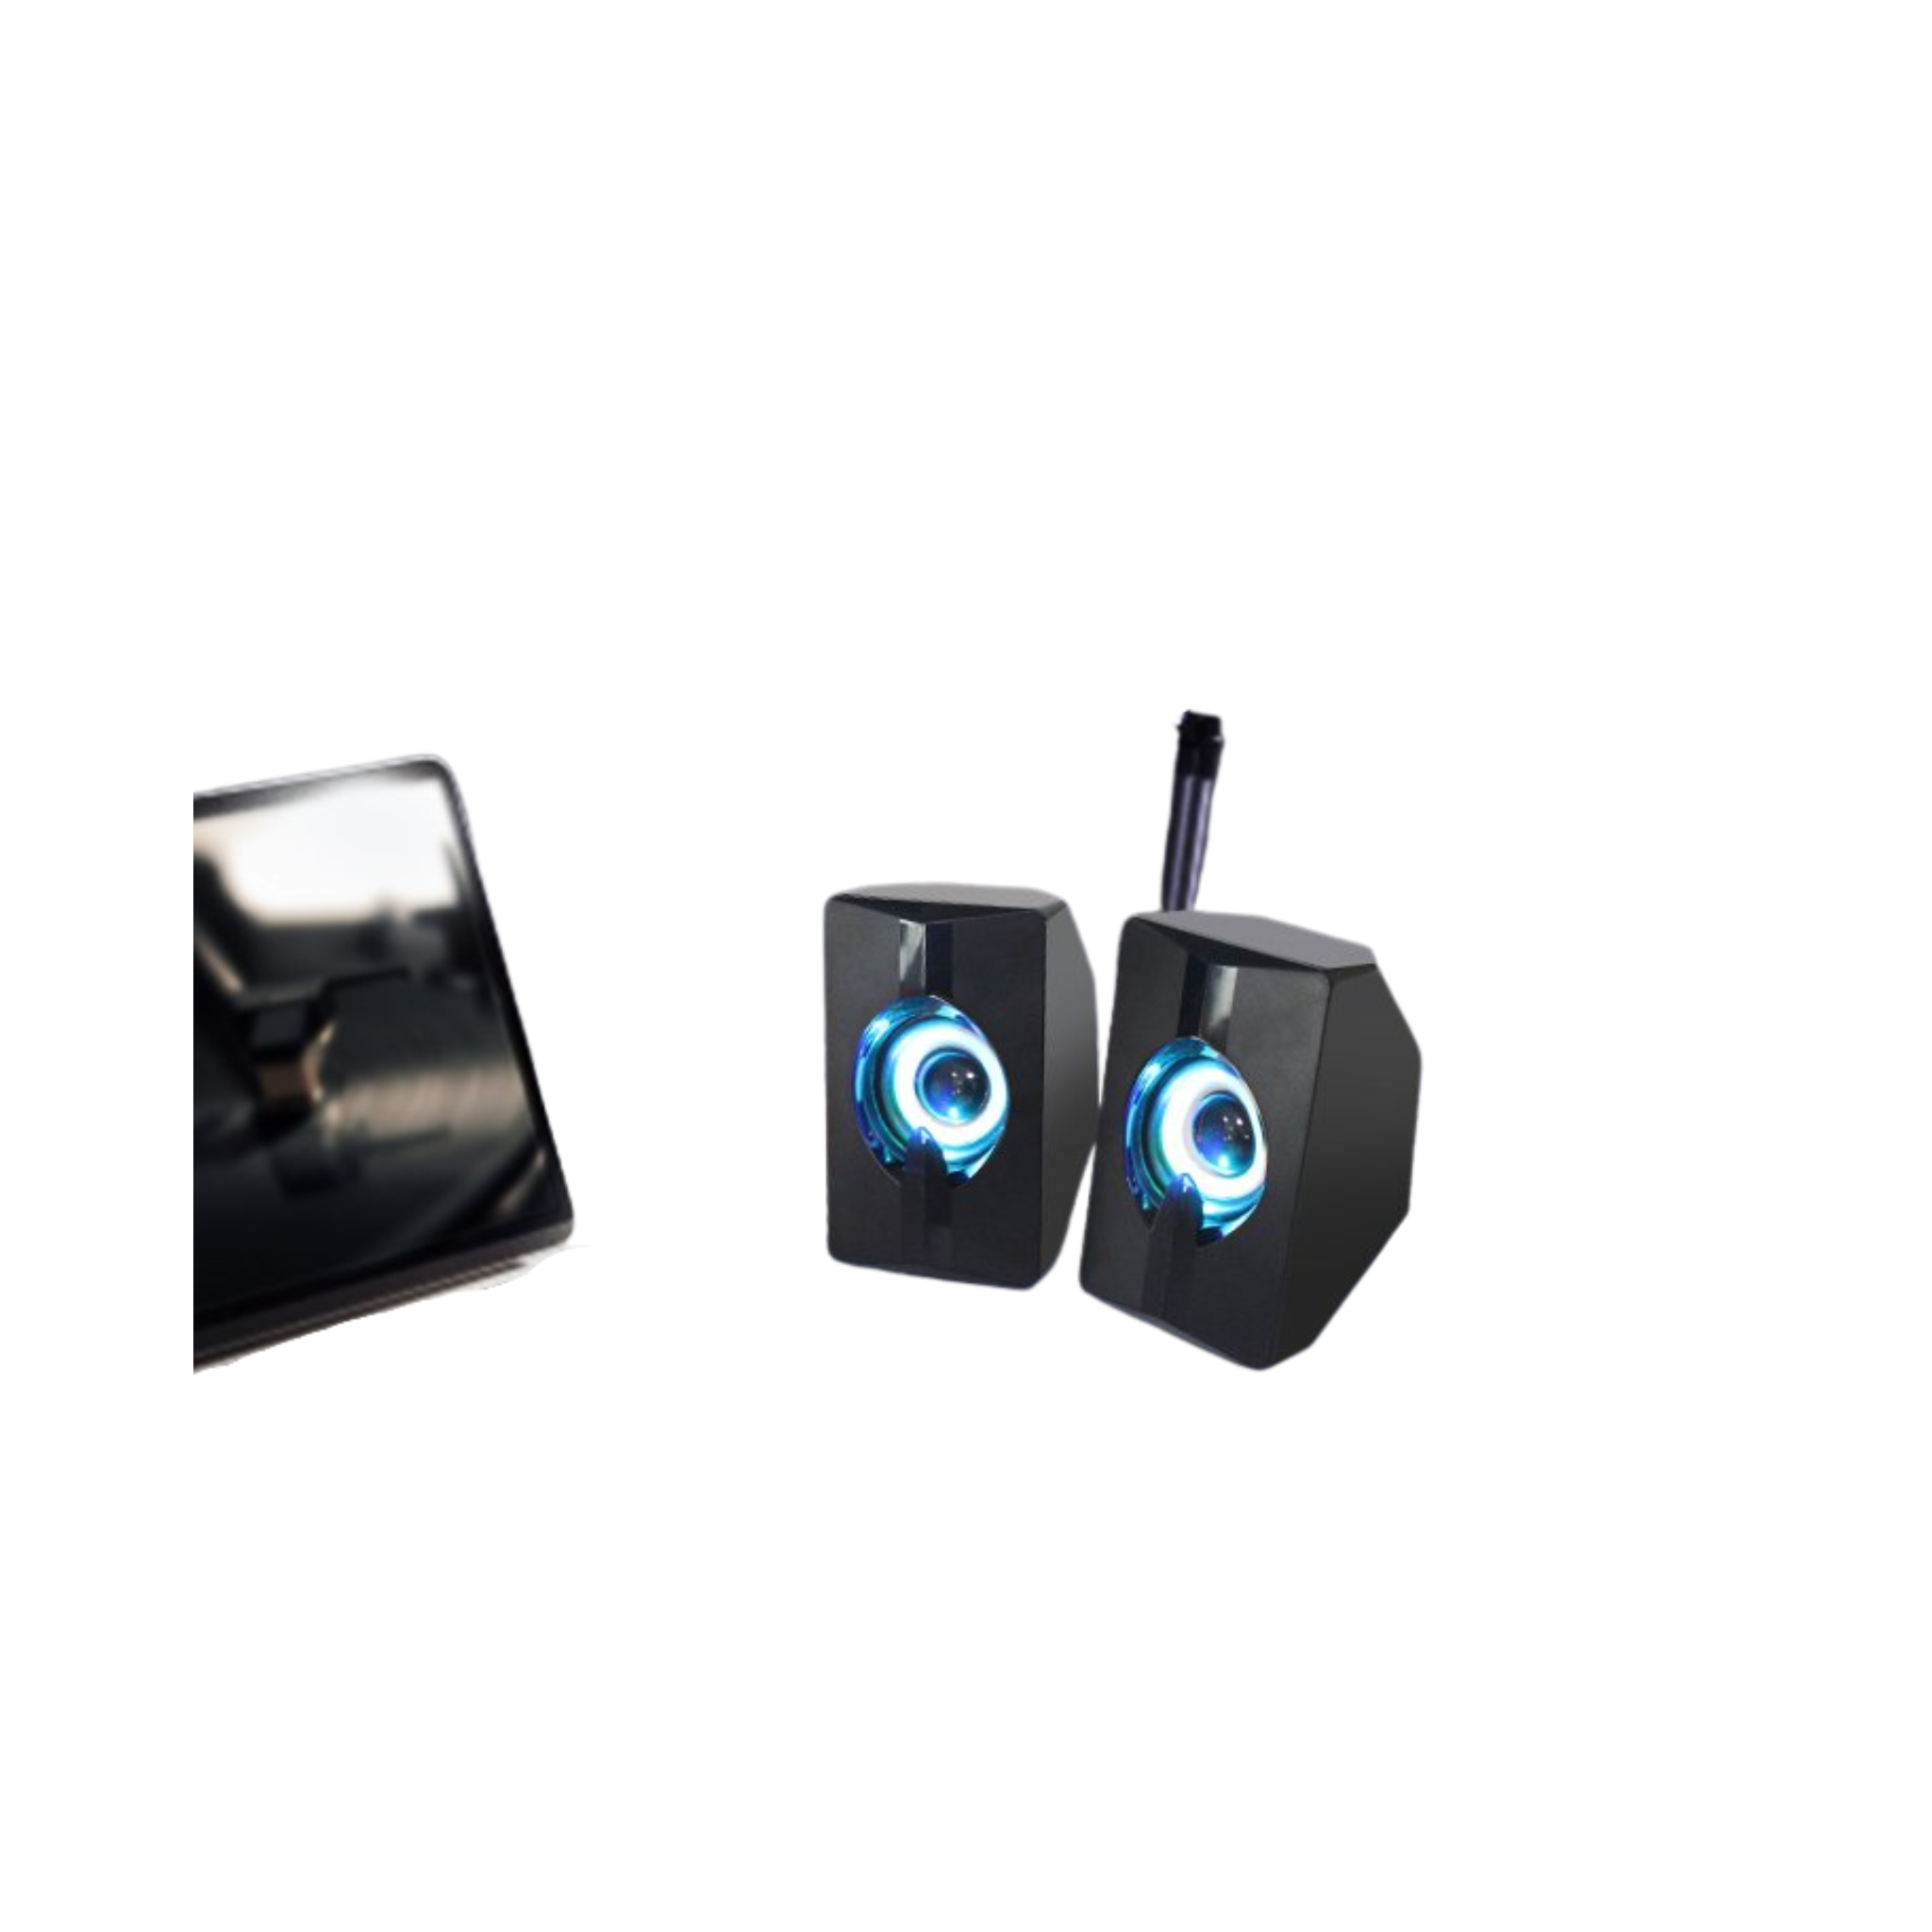 Multimedia Speaker, Mini LED Stereo Subwoofer, for PC/Laptop/LCD